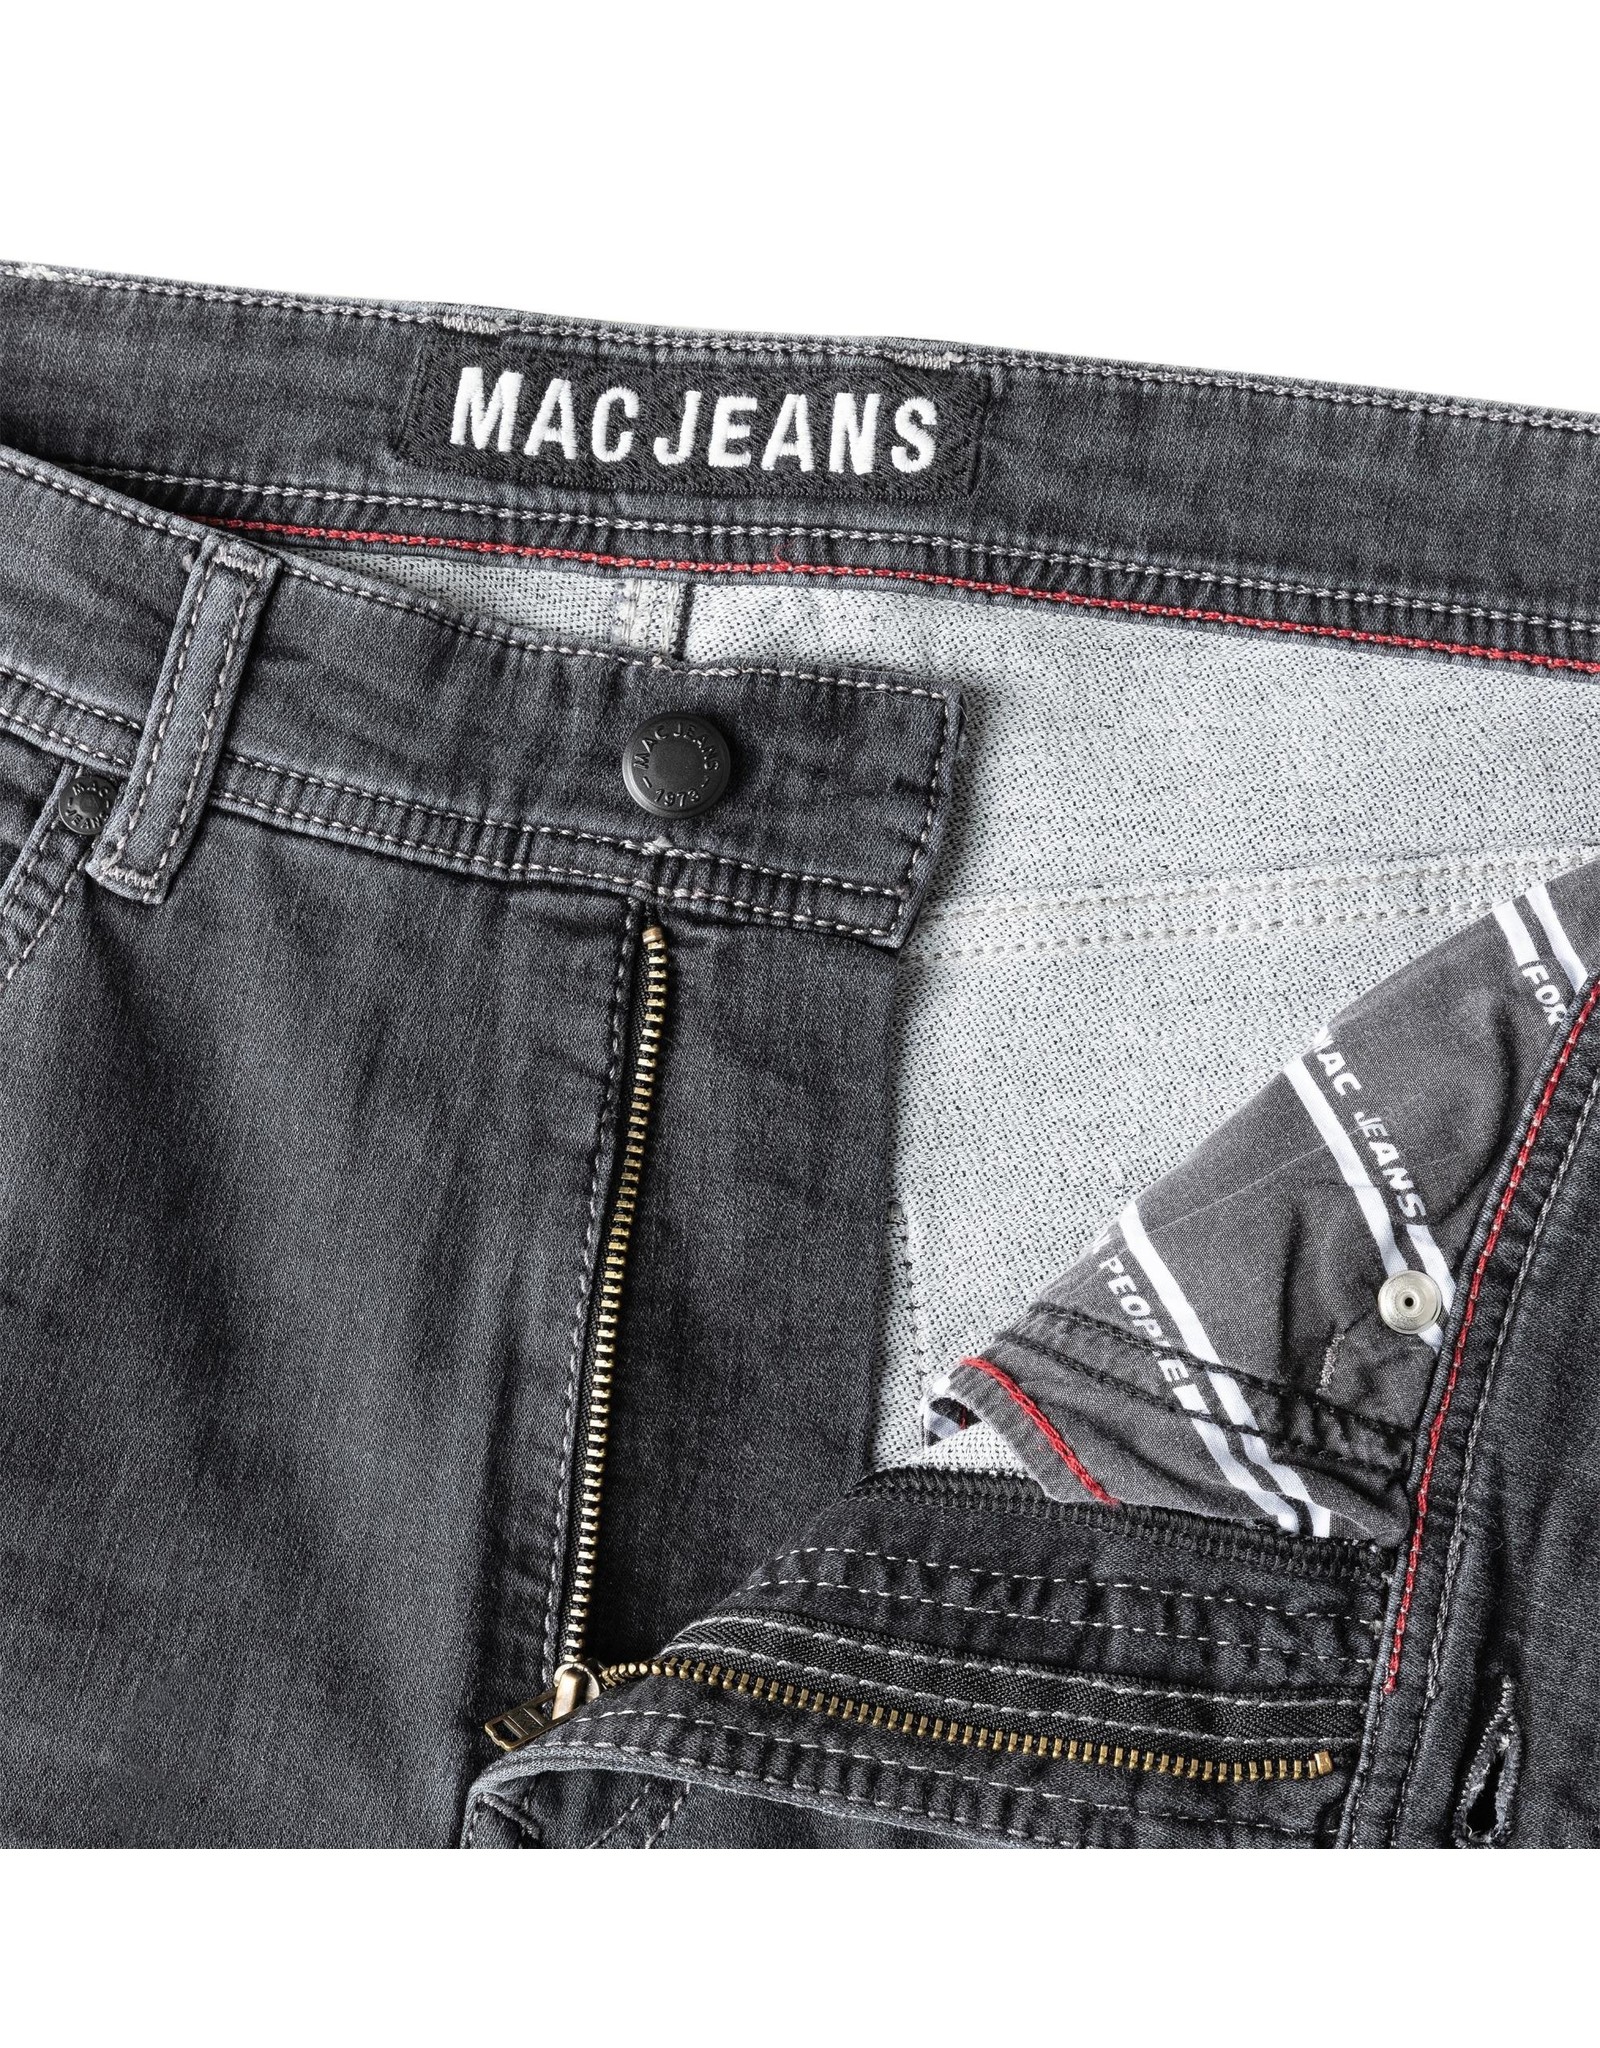 MAC jeans 15 broek jog 'n jeans 0590 H830 grey used